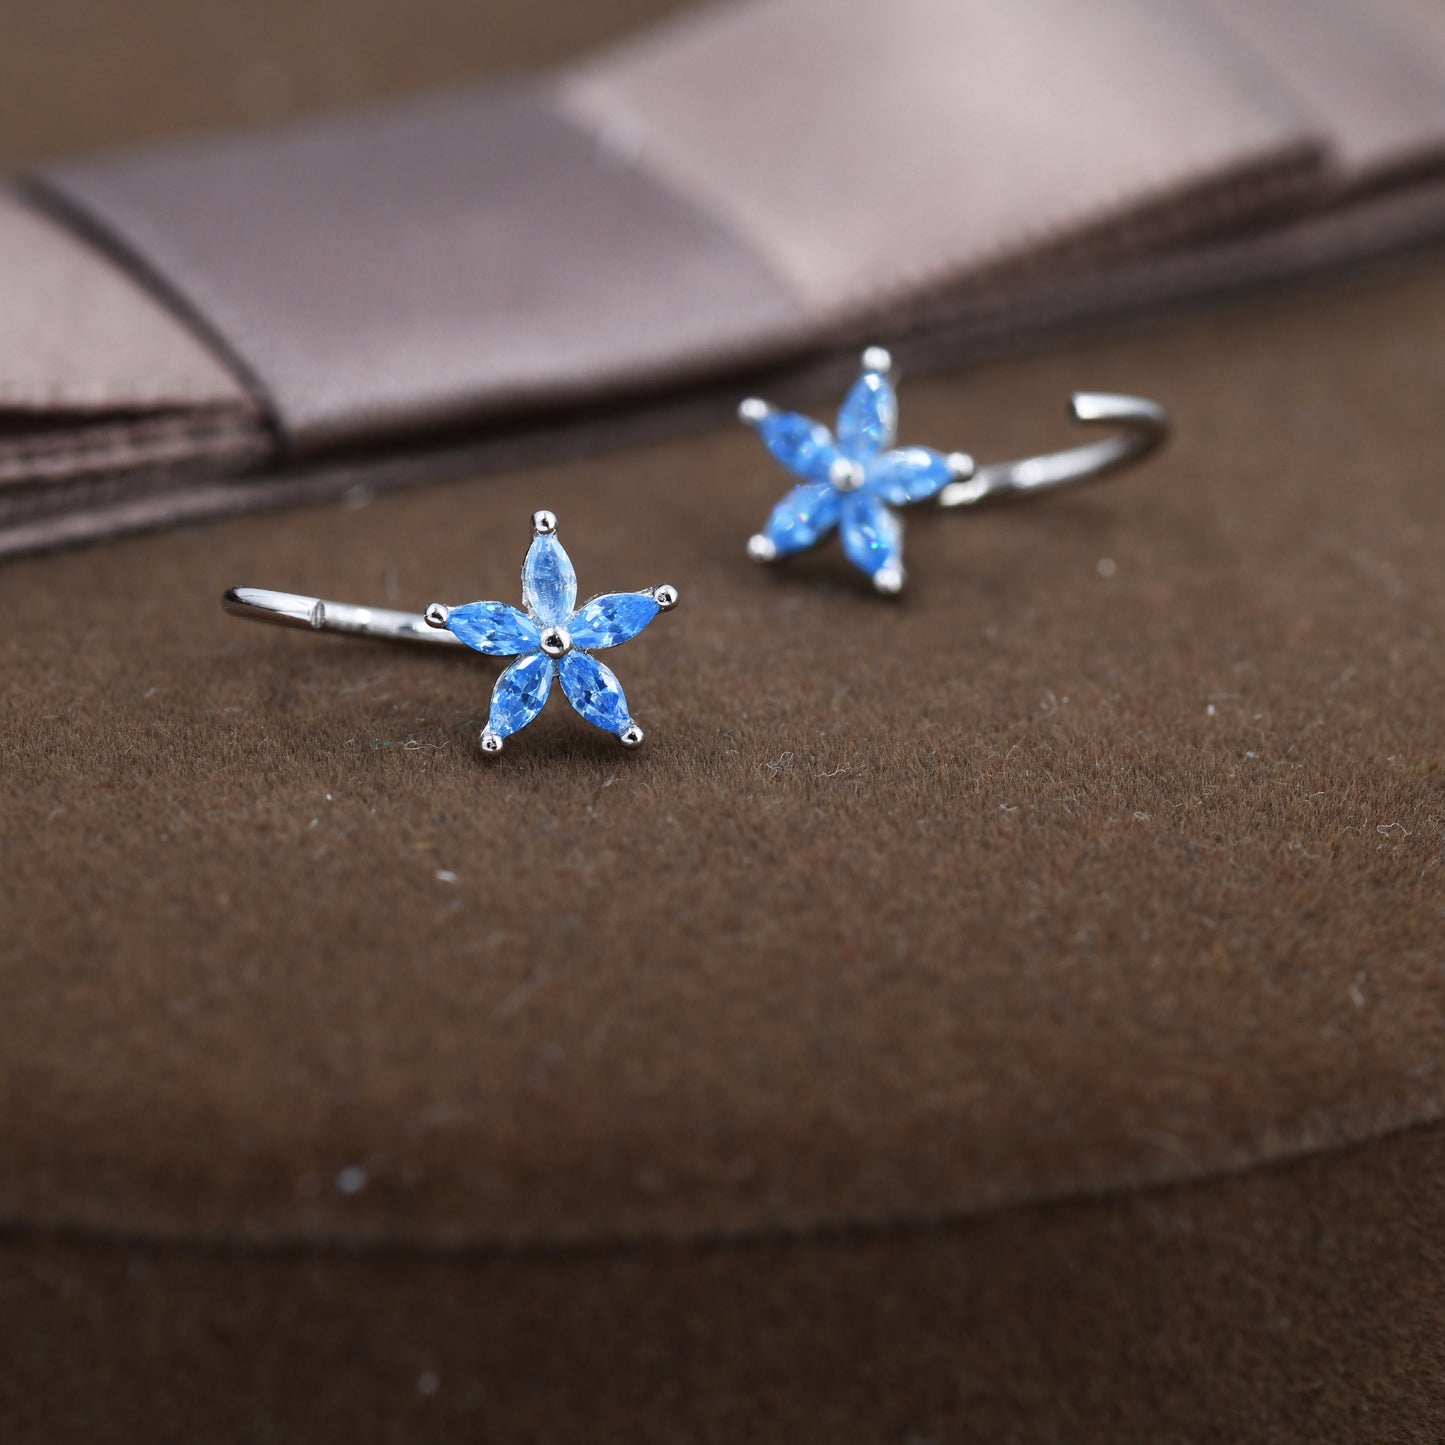 Aquamarine Blue CZ Flower Huggie Hoop Earrings in Sterling Silver, Marquise CZ Flower Threader Hoop Earrings, Pull Through